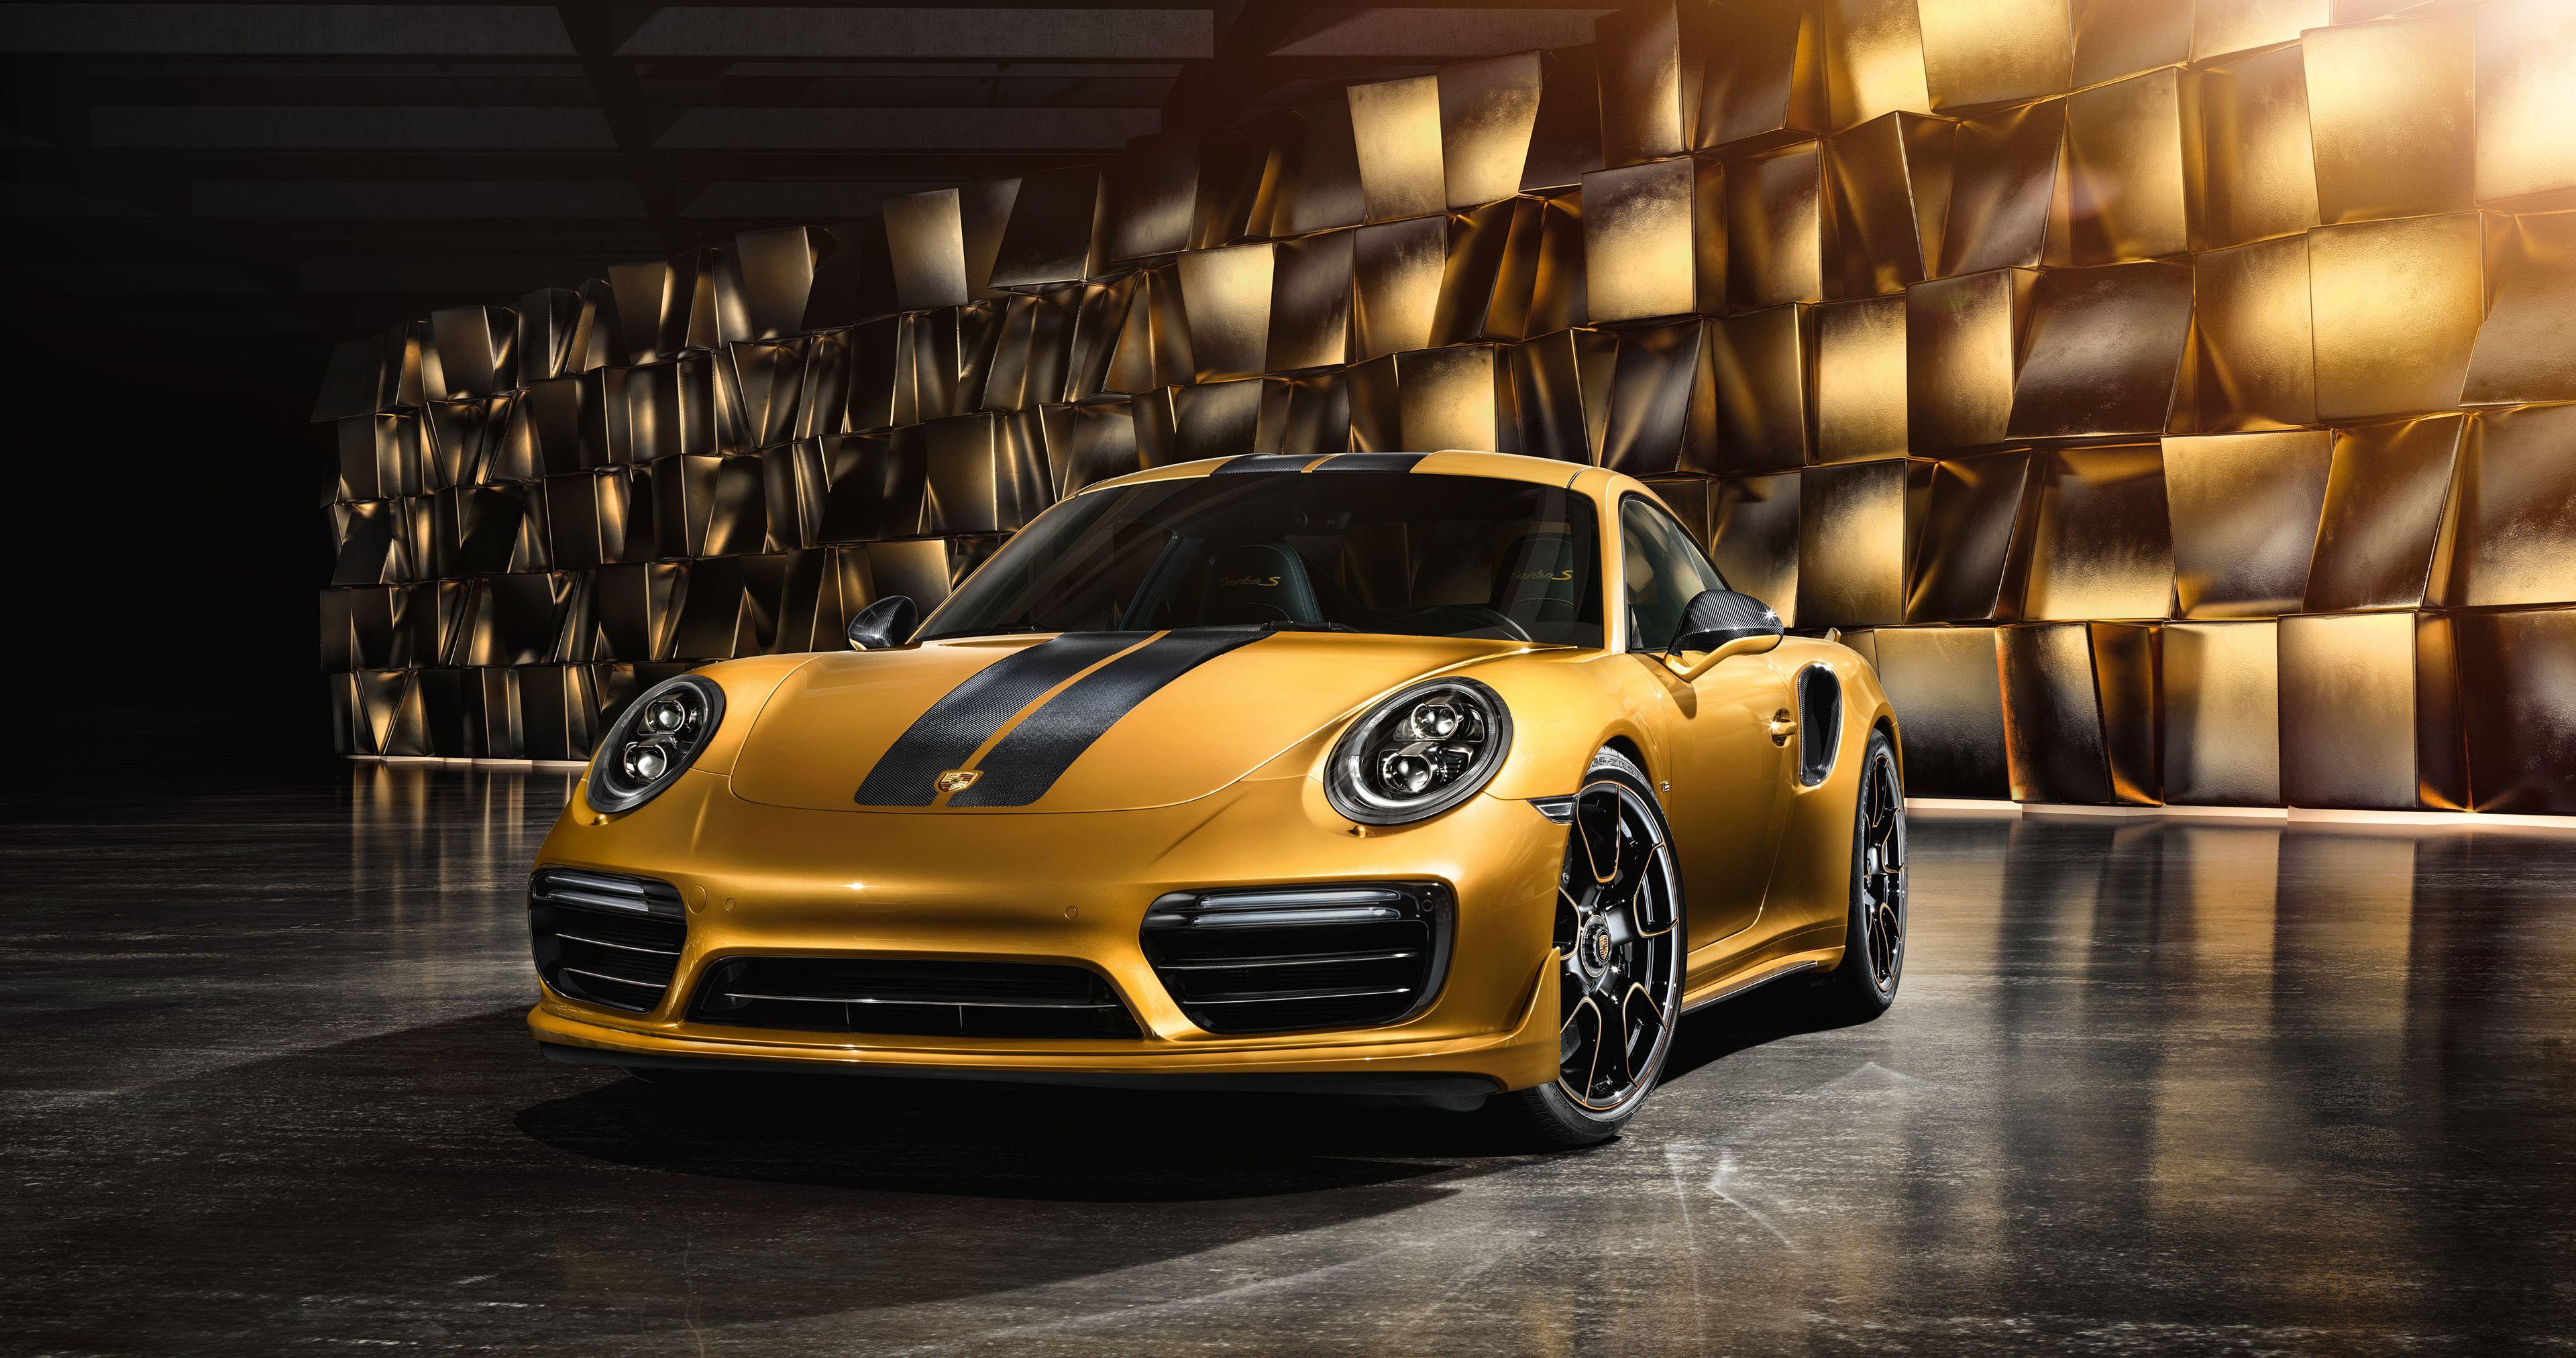 Download 14 Porsche 911 Turbo S Wallpaper